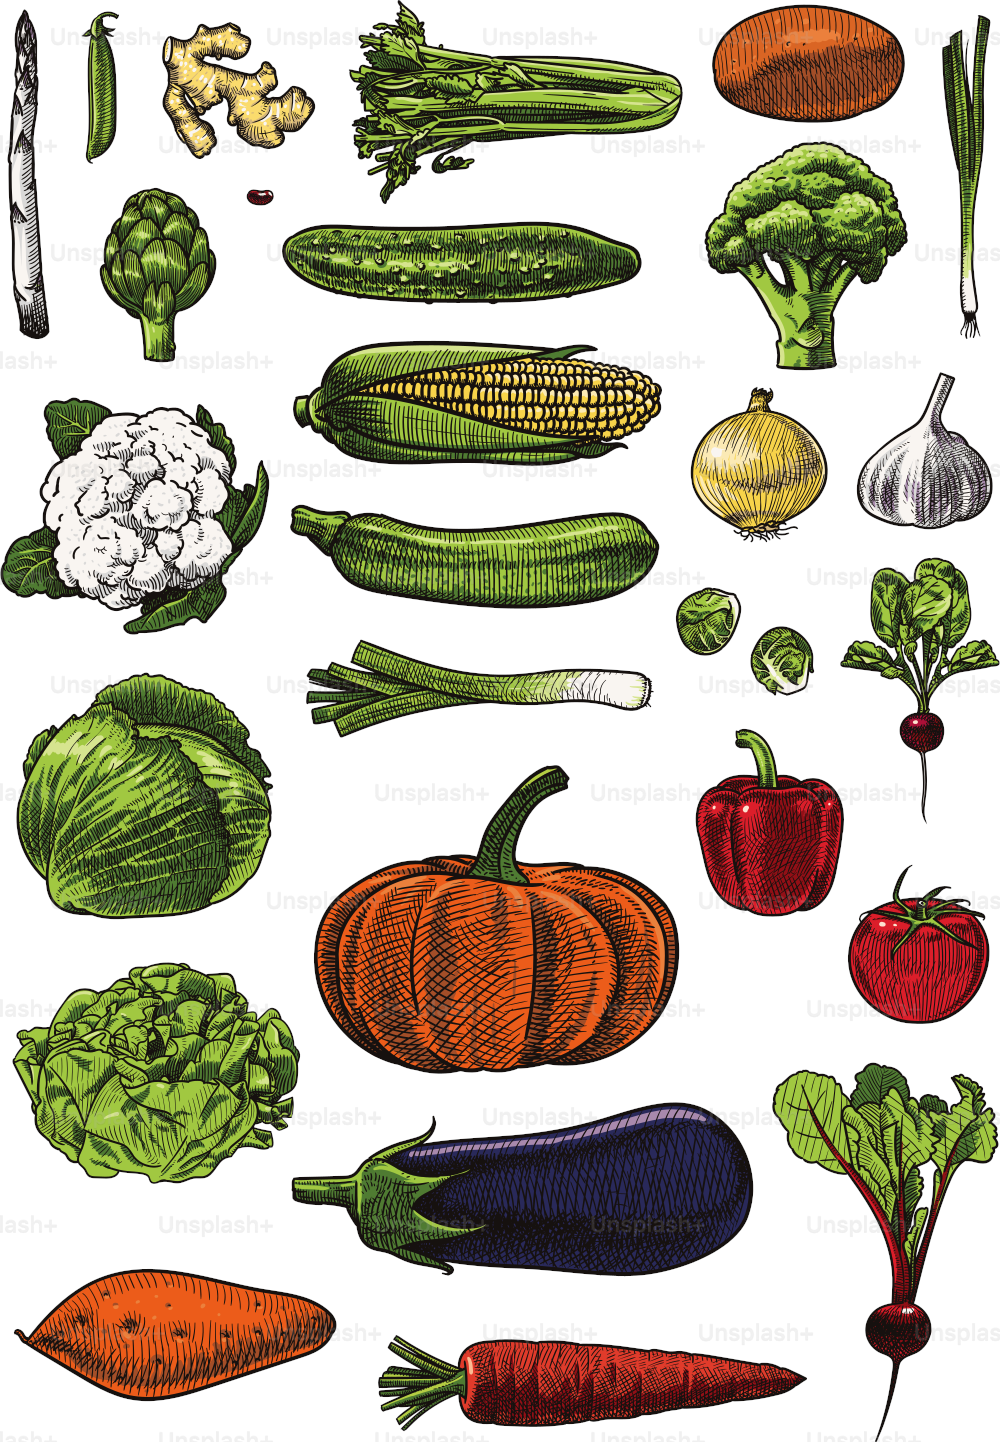 Ilustraciones vectoriales de verduras variadas. Cuidadosamente agrupados y etiquetados, fáciles de seleccionar y editar.